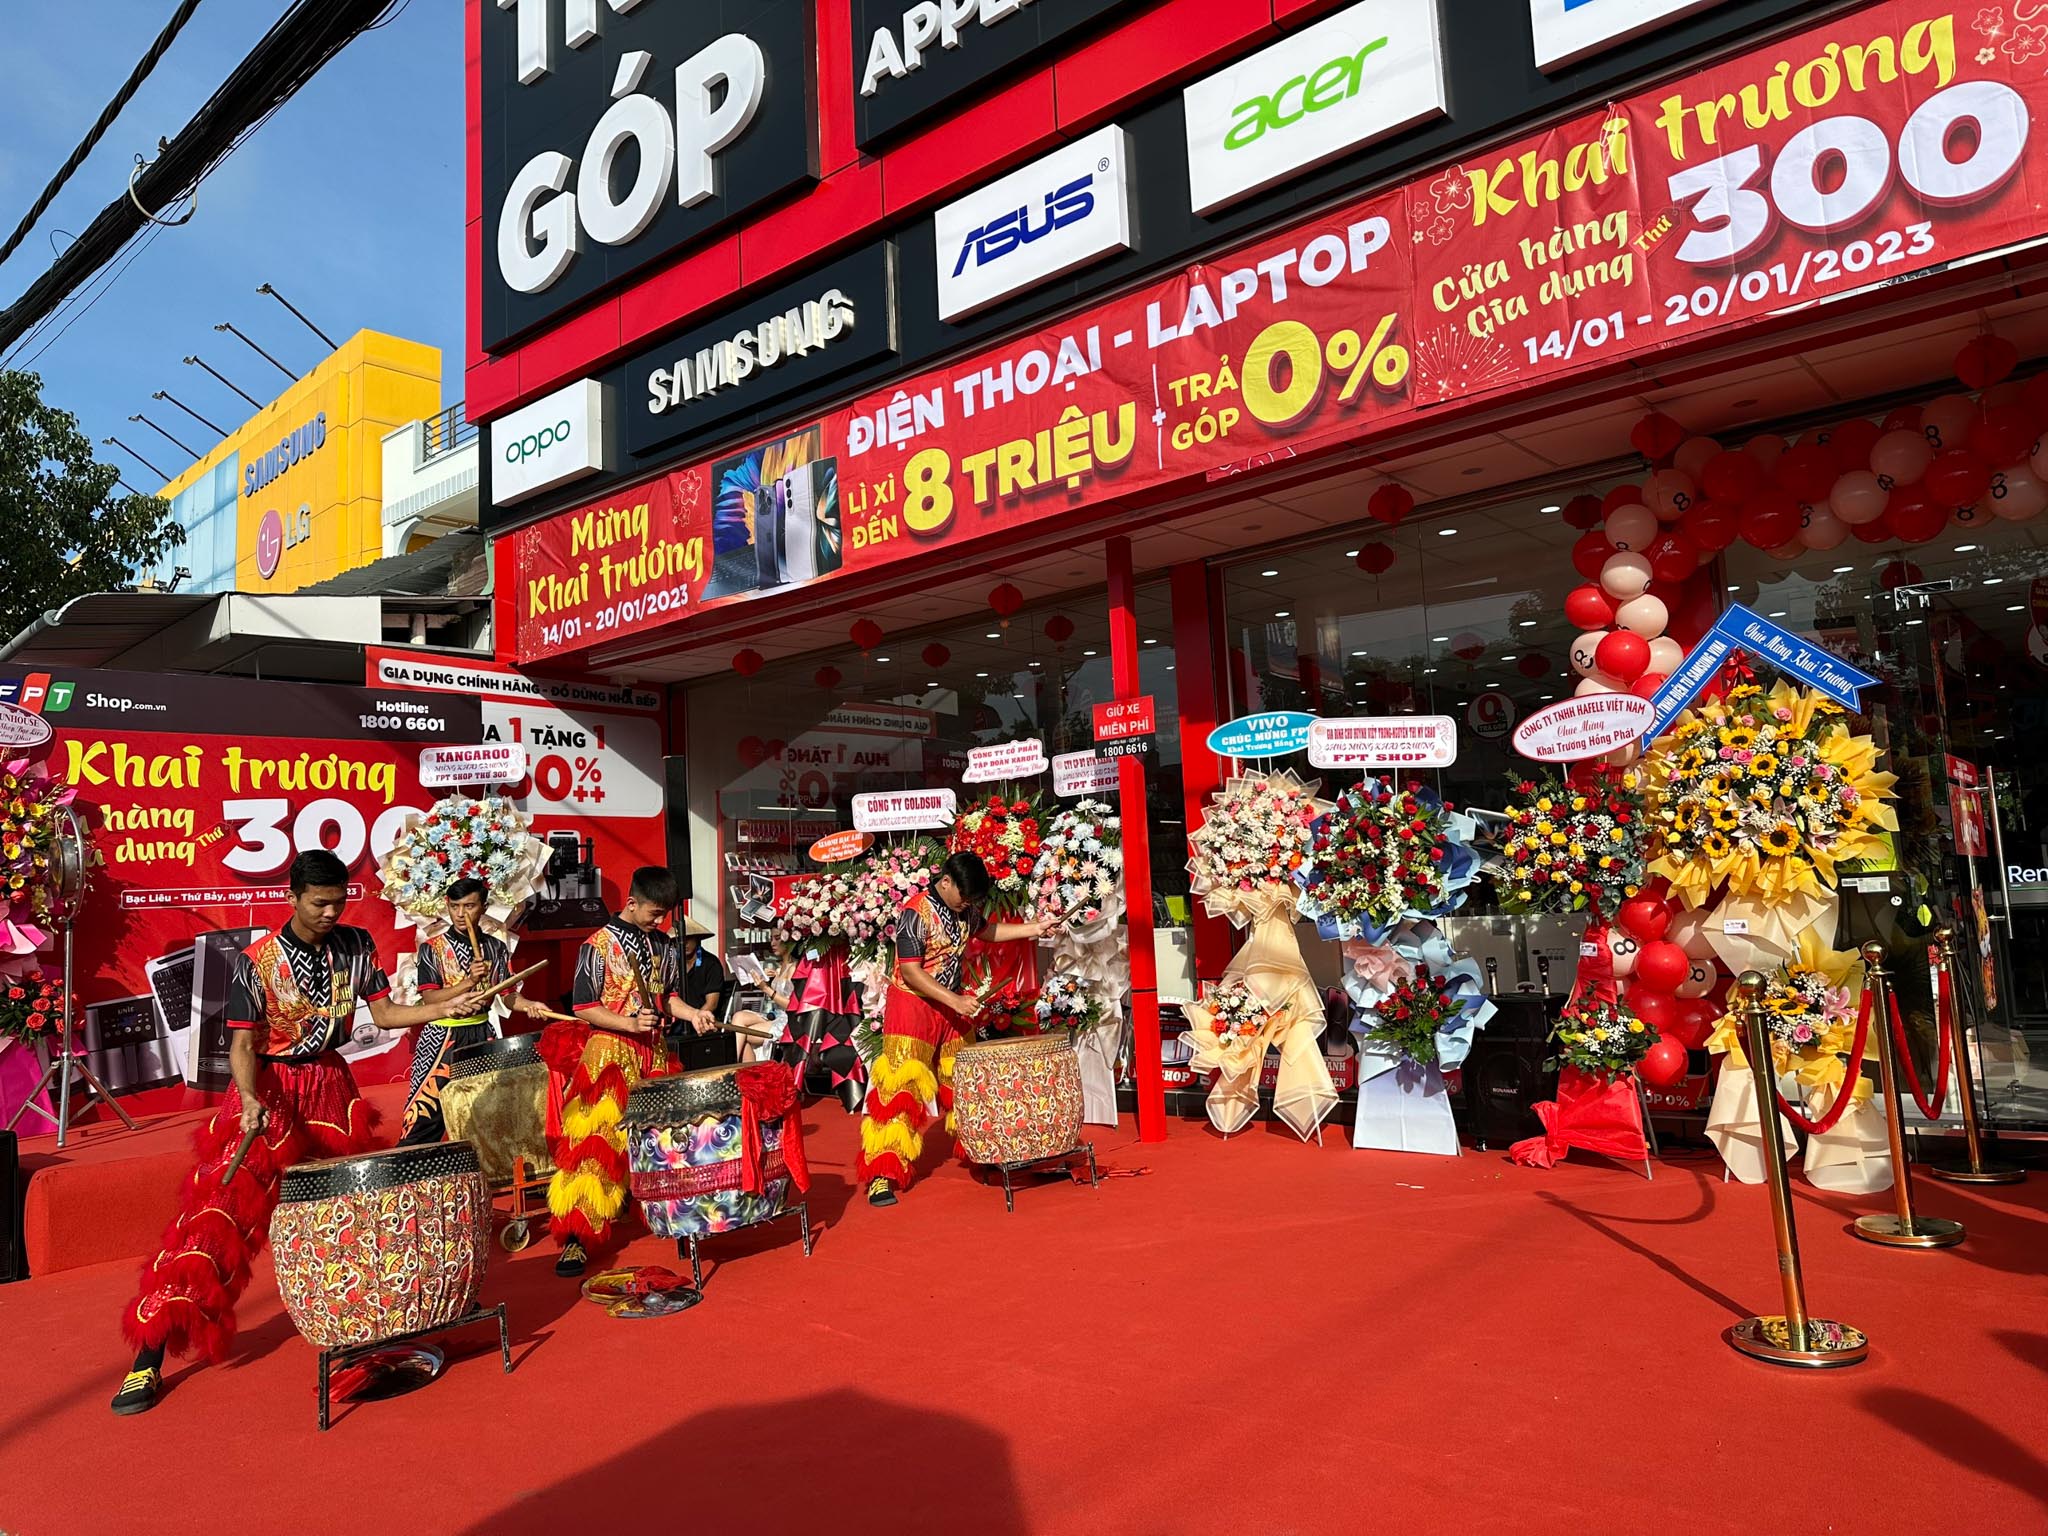 FPT Shop chạm mốc cửa hàng gia dụng thứ 300, mở rộng khắp 60 tỉnh thành